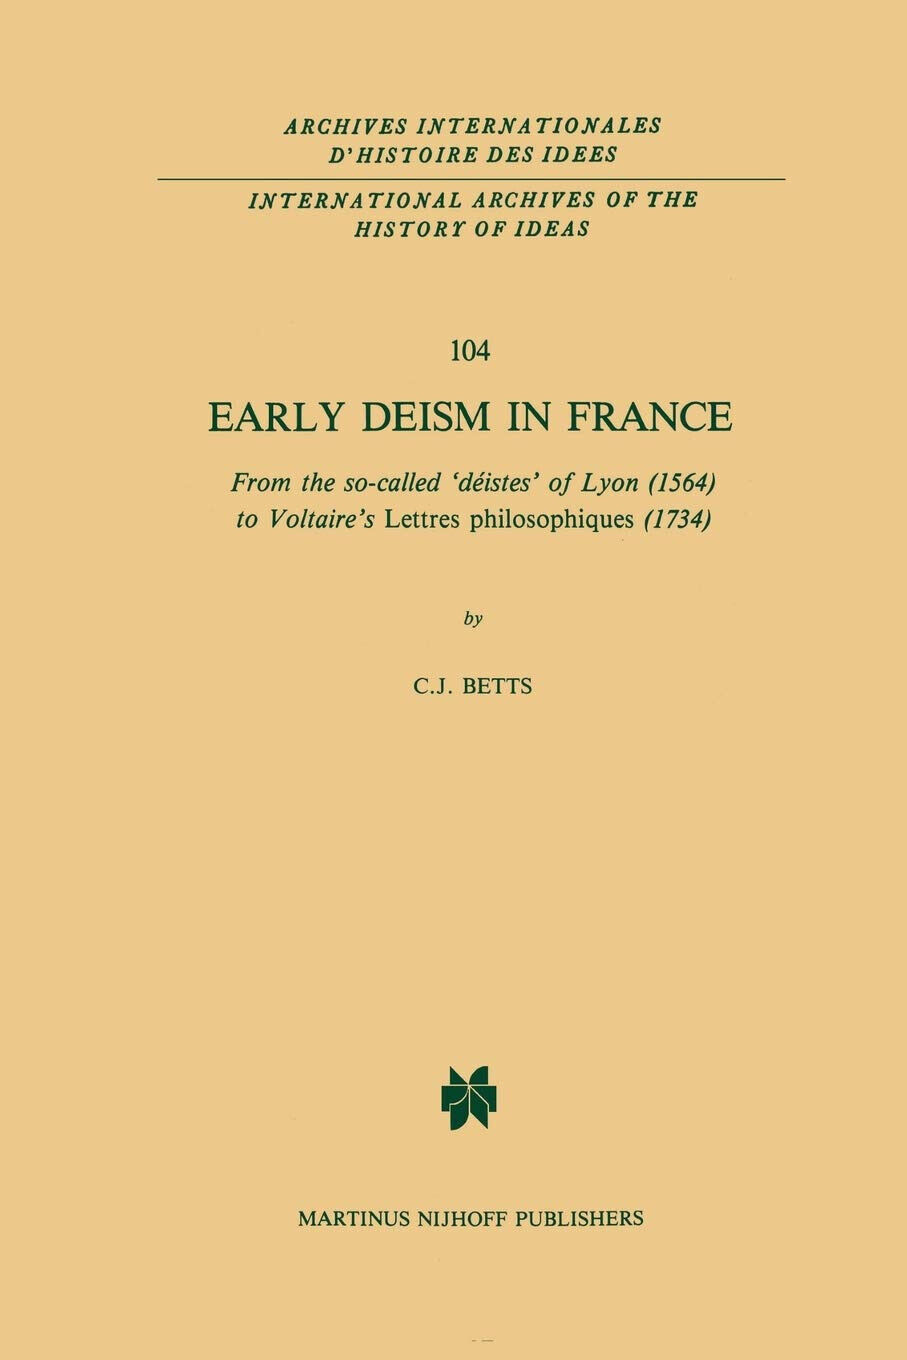 Early Deism in France - C. J. Betts - Springer, 2013